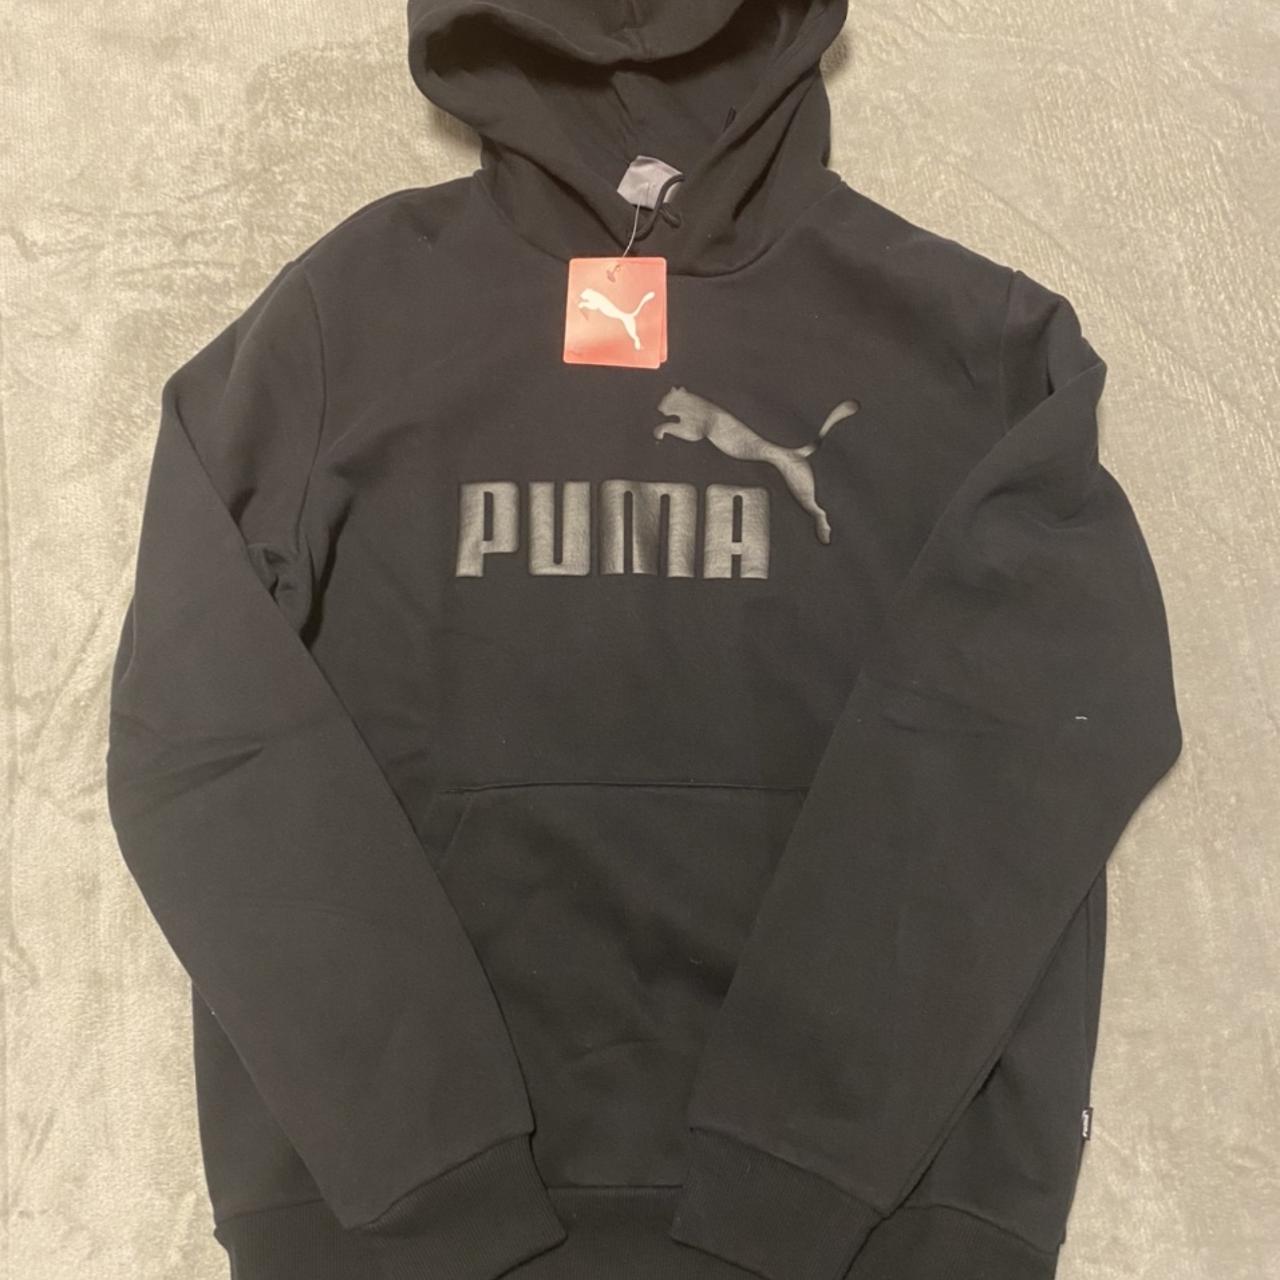 Puma paragon hoodie Colour - Black Size - Men’s... - Depop